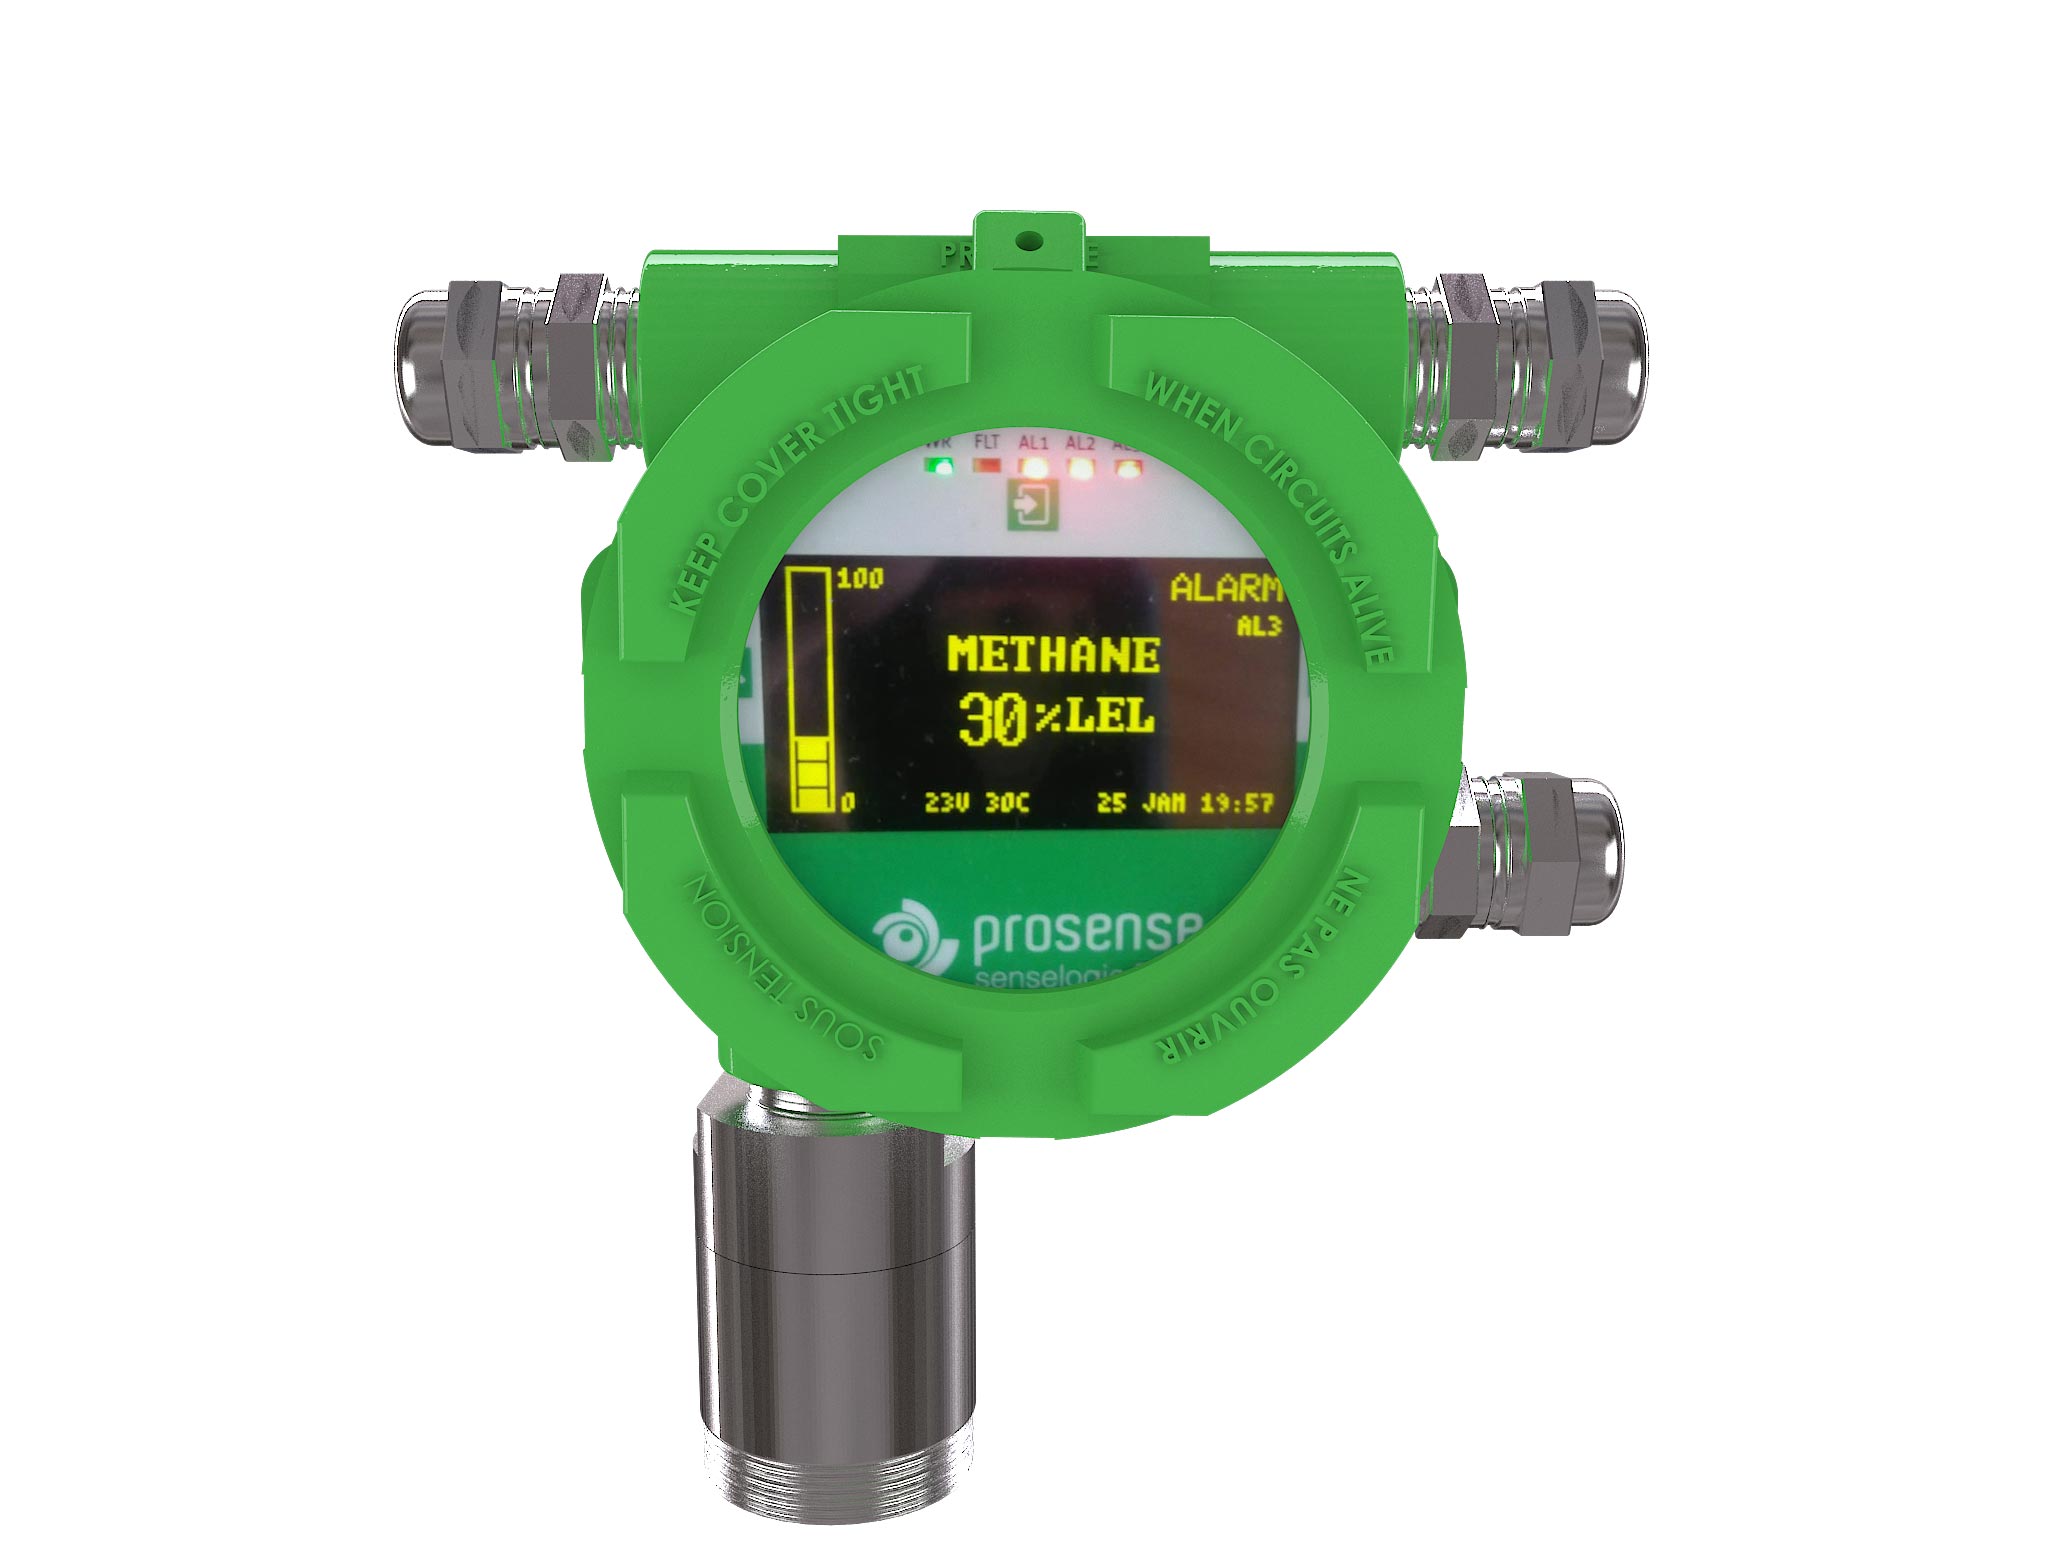 PQD-5835 Propylene Gas Detector